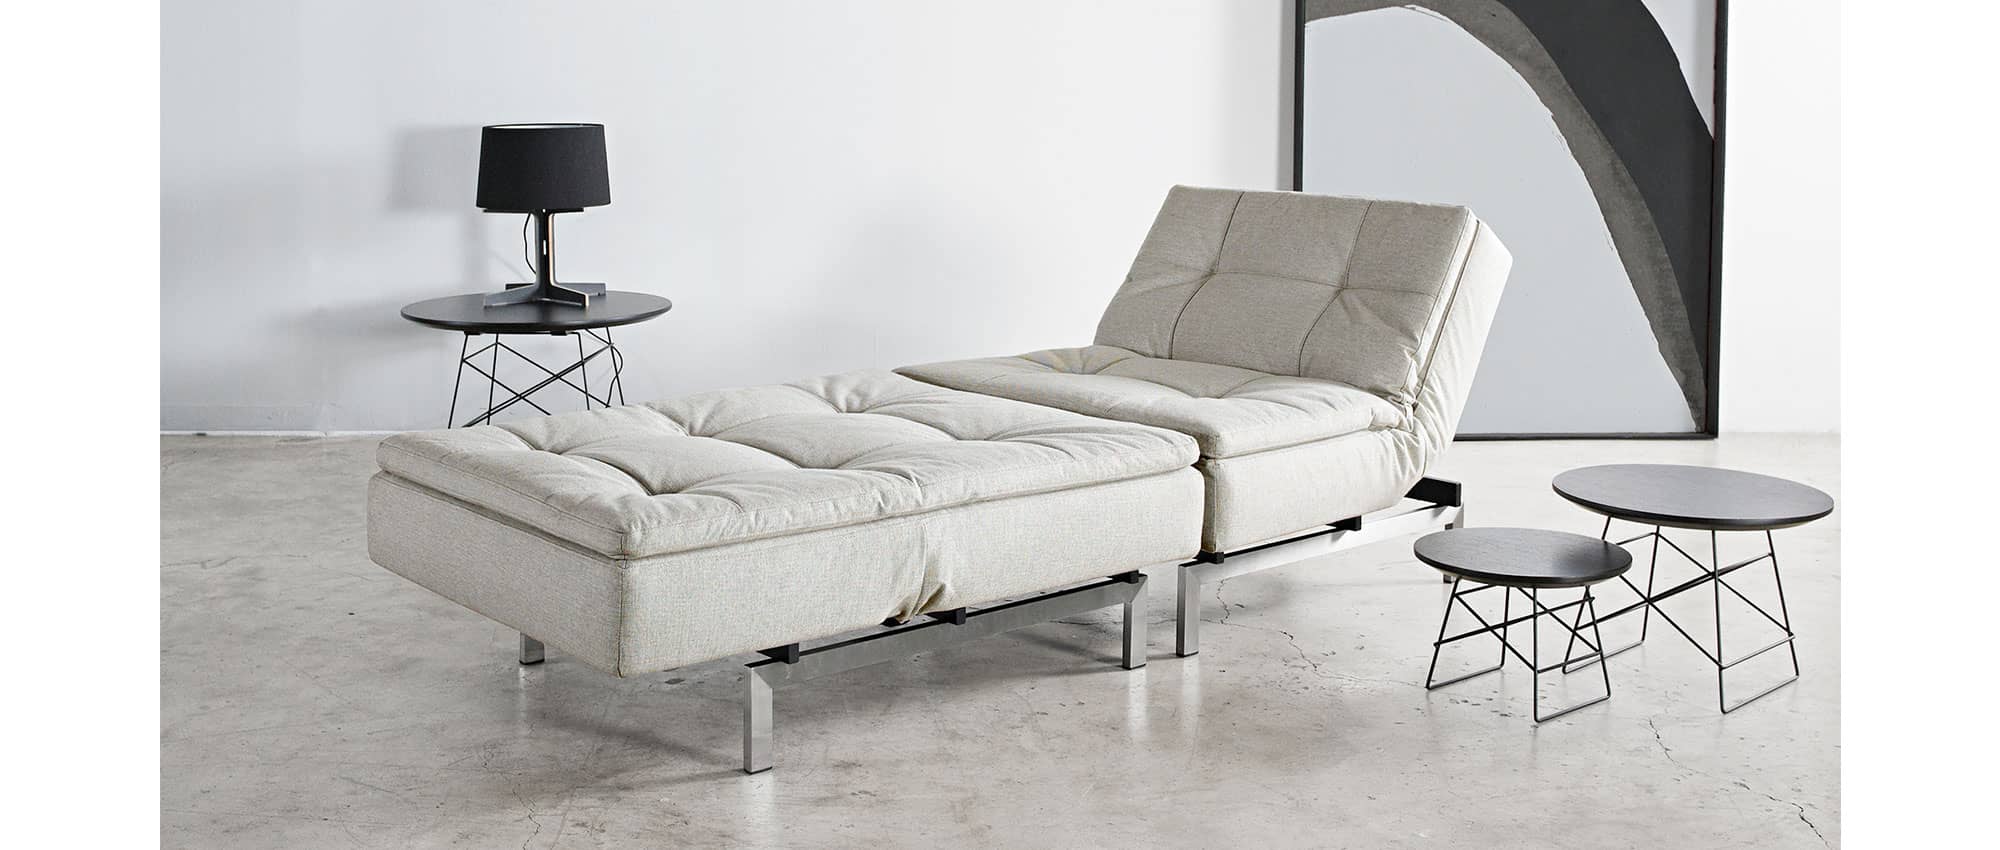 weiße DUBLEXO Sessel von Innovation mit Metallfüßen Chrom und klappbarer Rückenlehne, flexibler Longchair